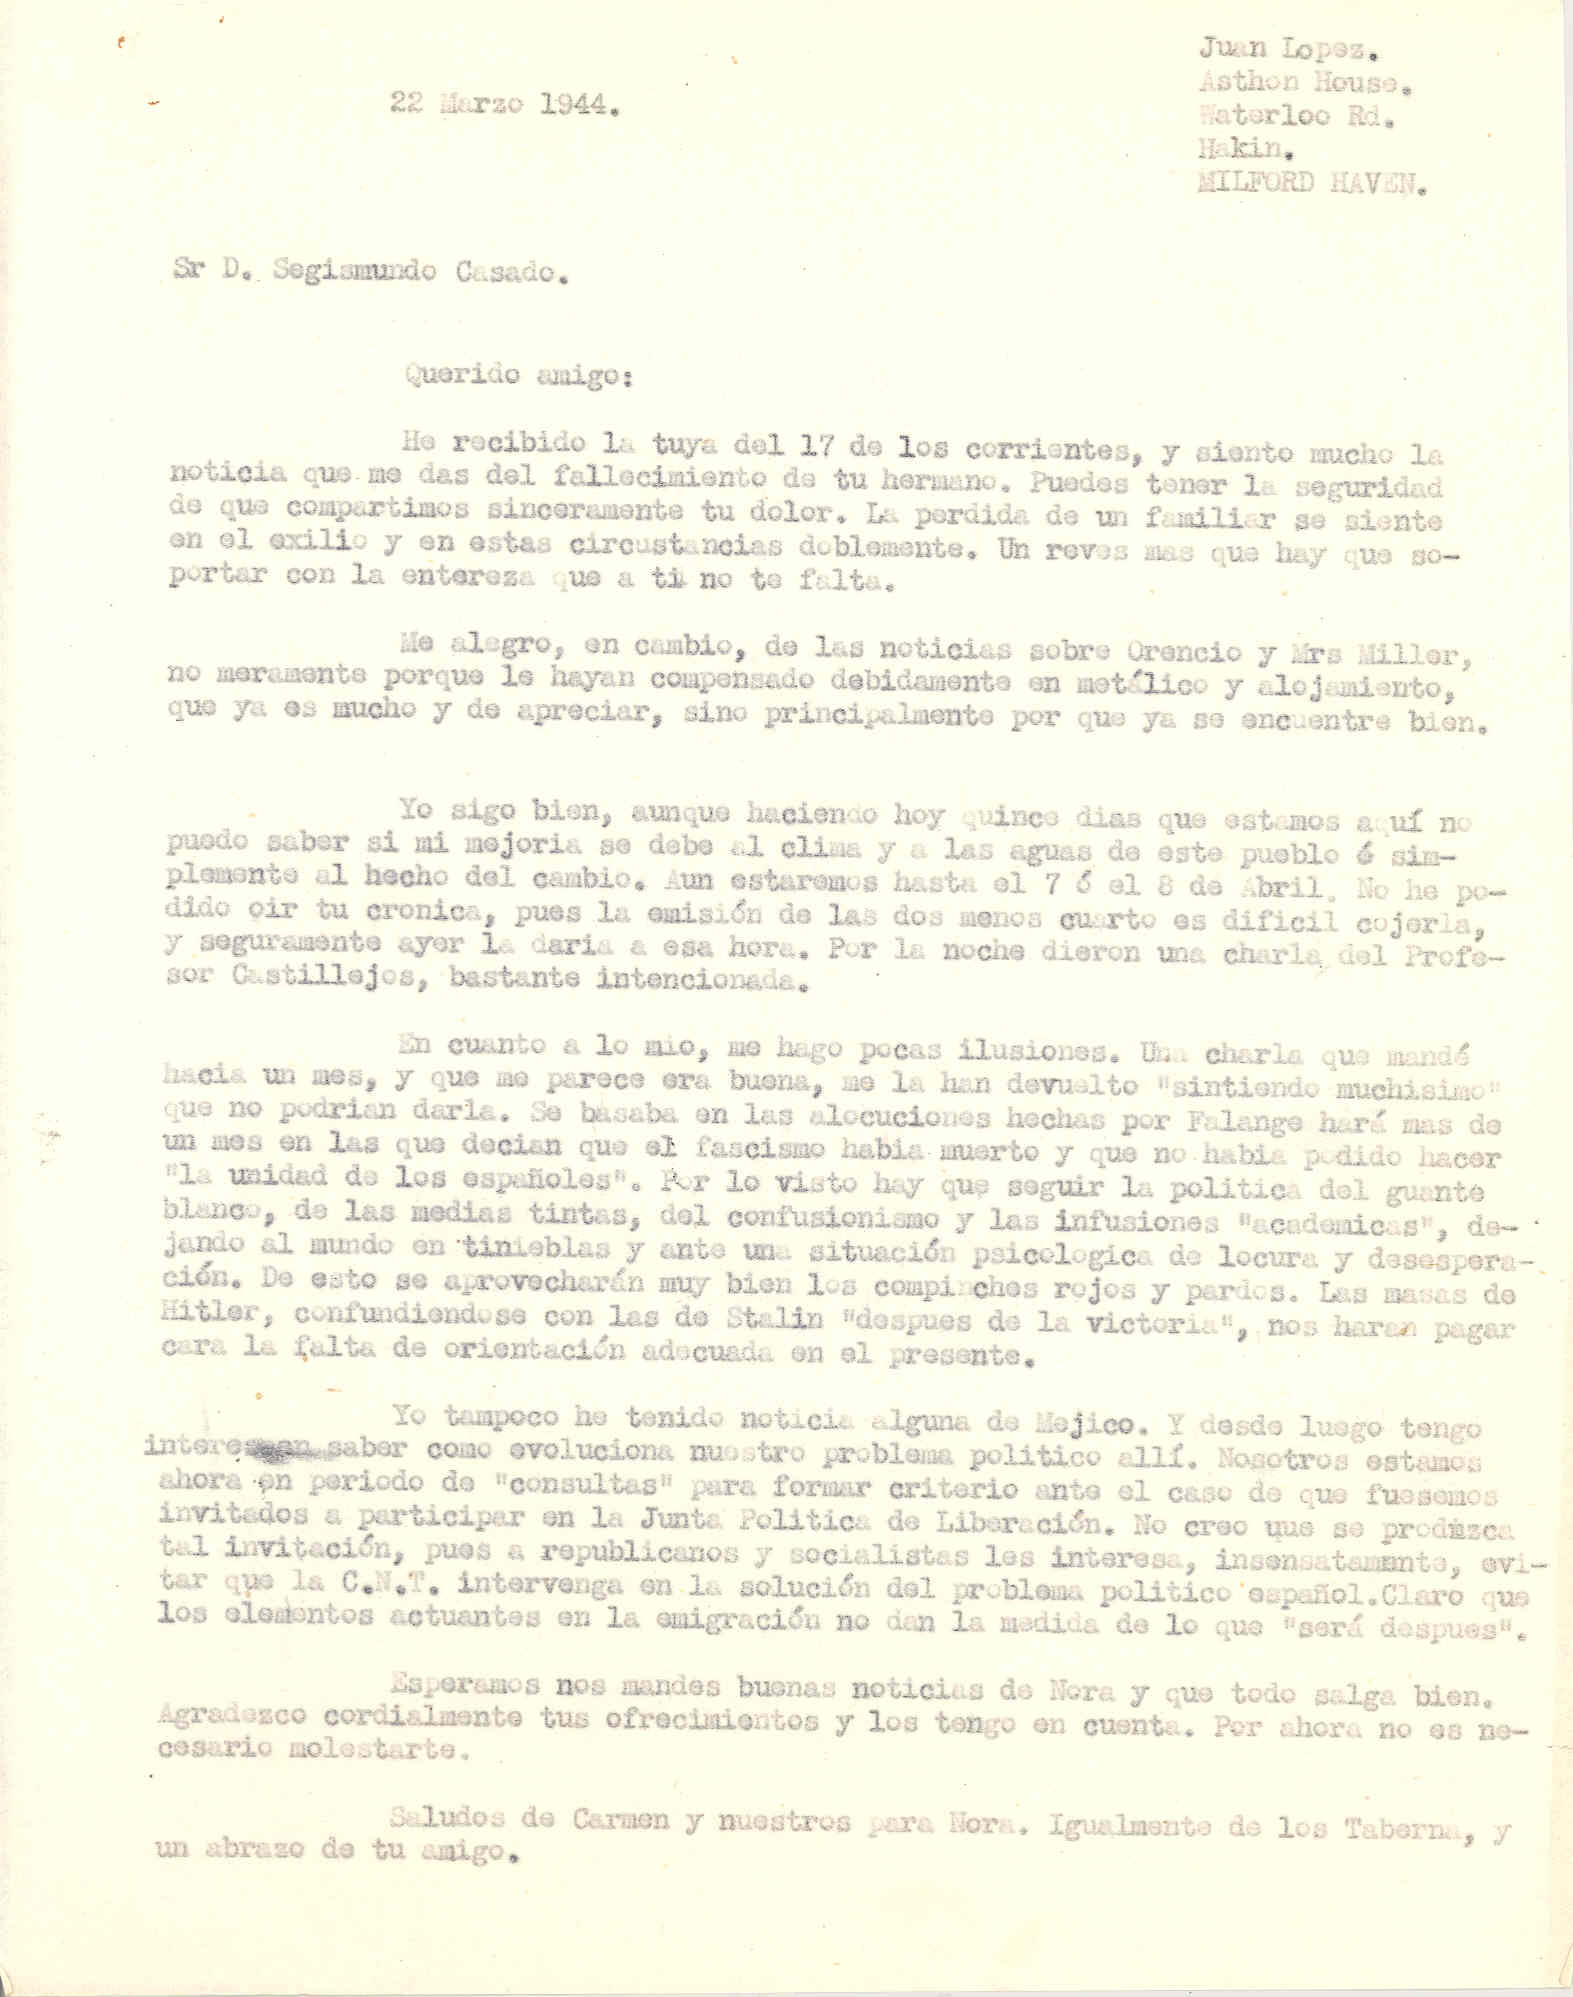 Carta a Segismundo Casado en la que cuenta que le han rechazado un trabajo que escribió basado en alocuciones de la Falange; también que no tiene noticias de México.